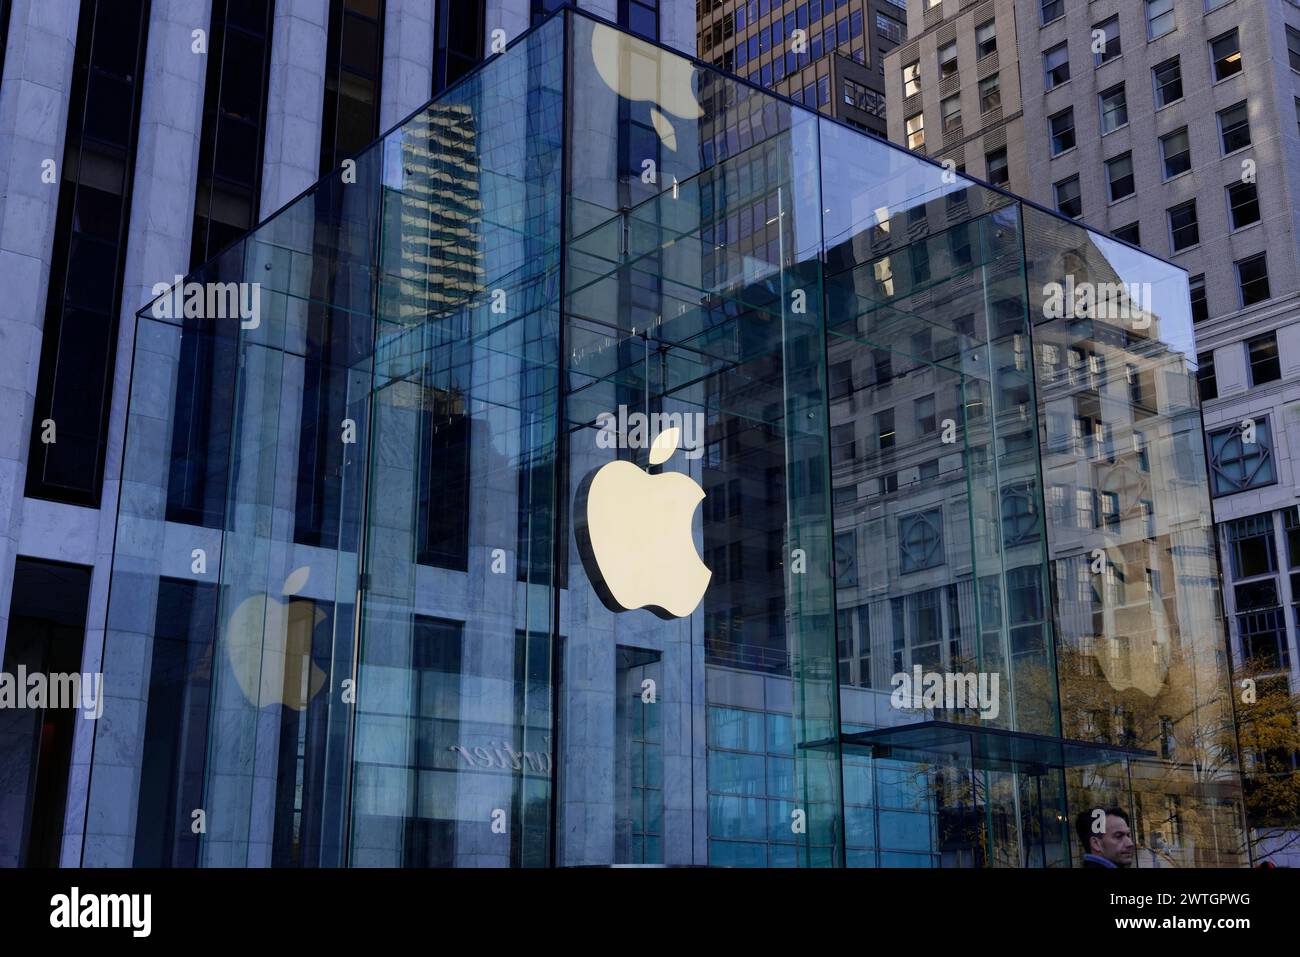 Apple Store avec façade en verre reflète les bâtiments environnants dans la ville, Manhattan, New York City, New York, États-Unis, Amérique du Nord Banque D'Images